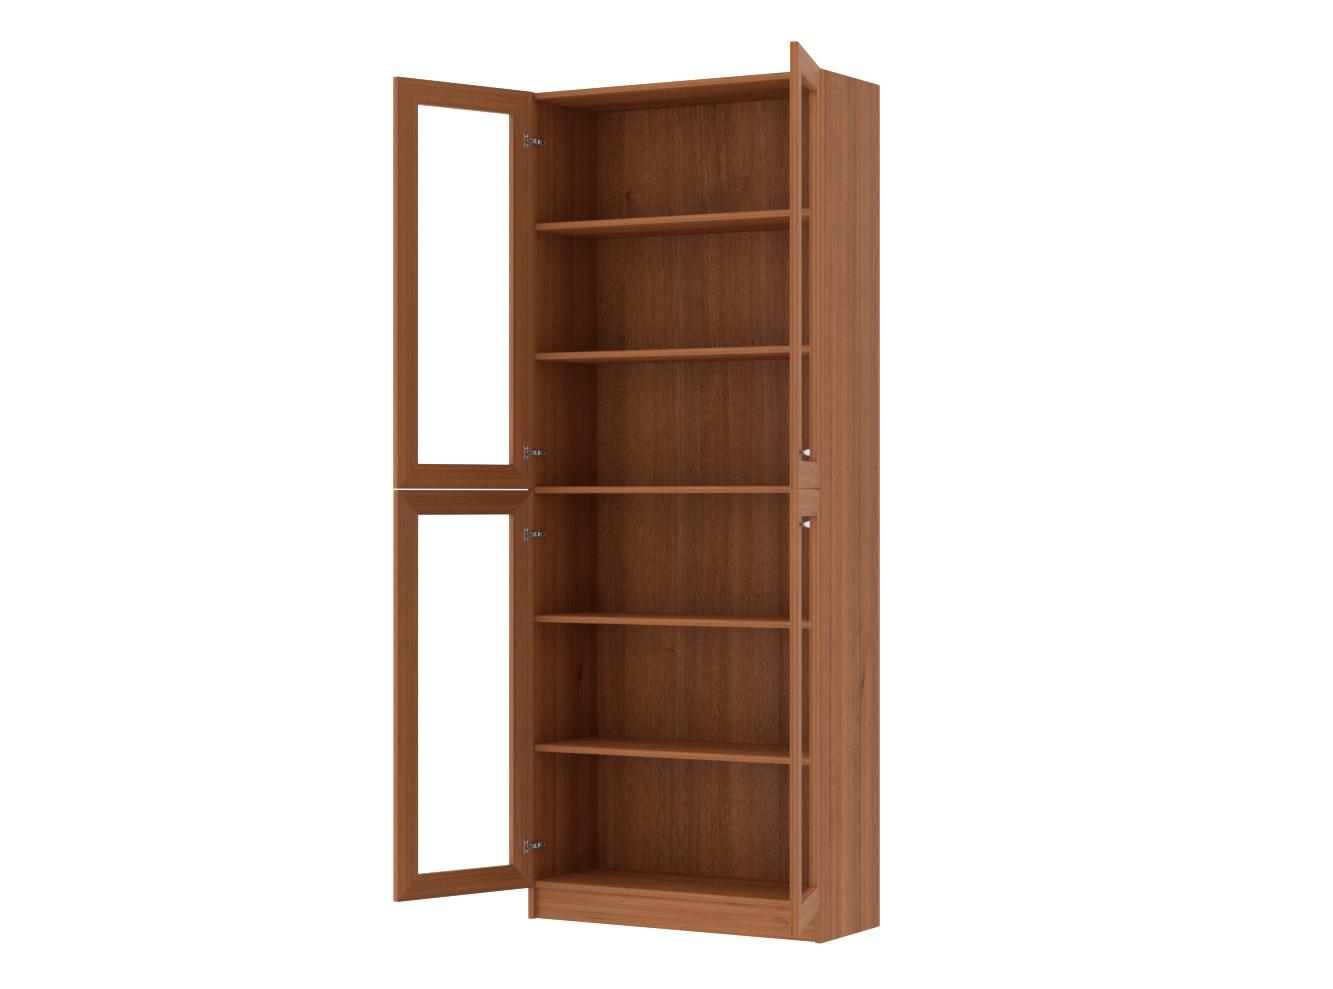 Книжный шкаф Билли 335 walnut guarneri ИКЕА (IKEA) изображение товара